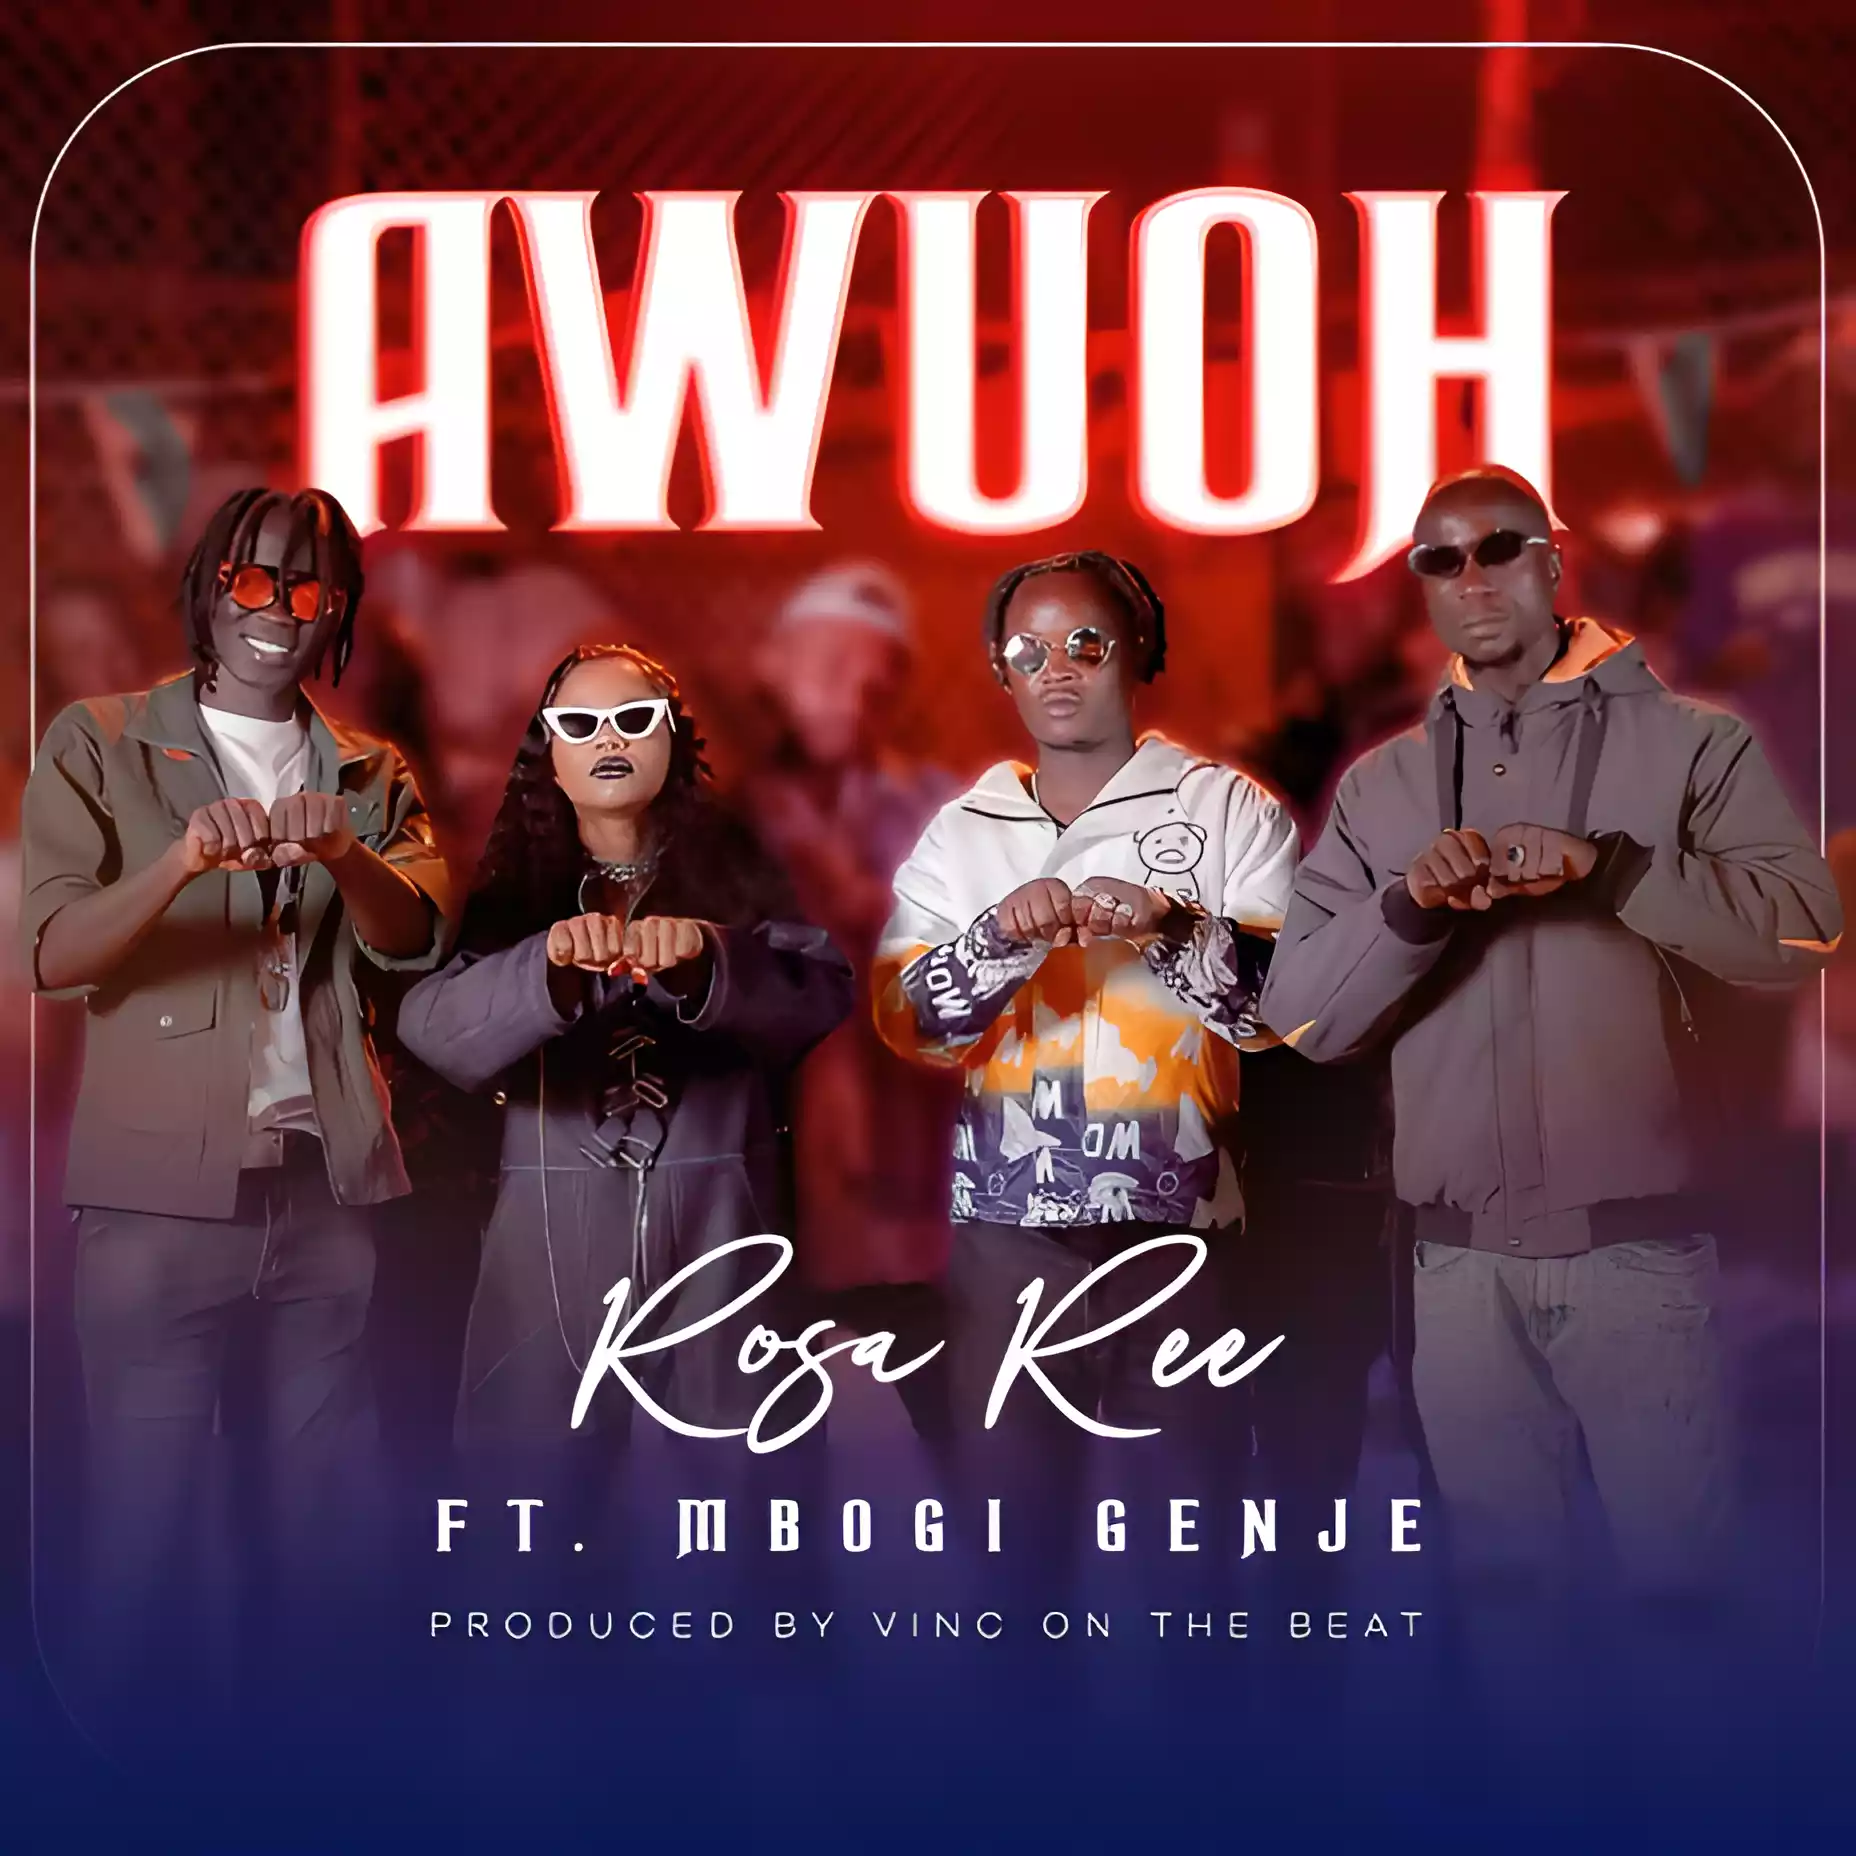 Rosa Ree ft Mbogi Genje - Awuoh Mp3 Download